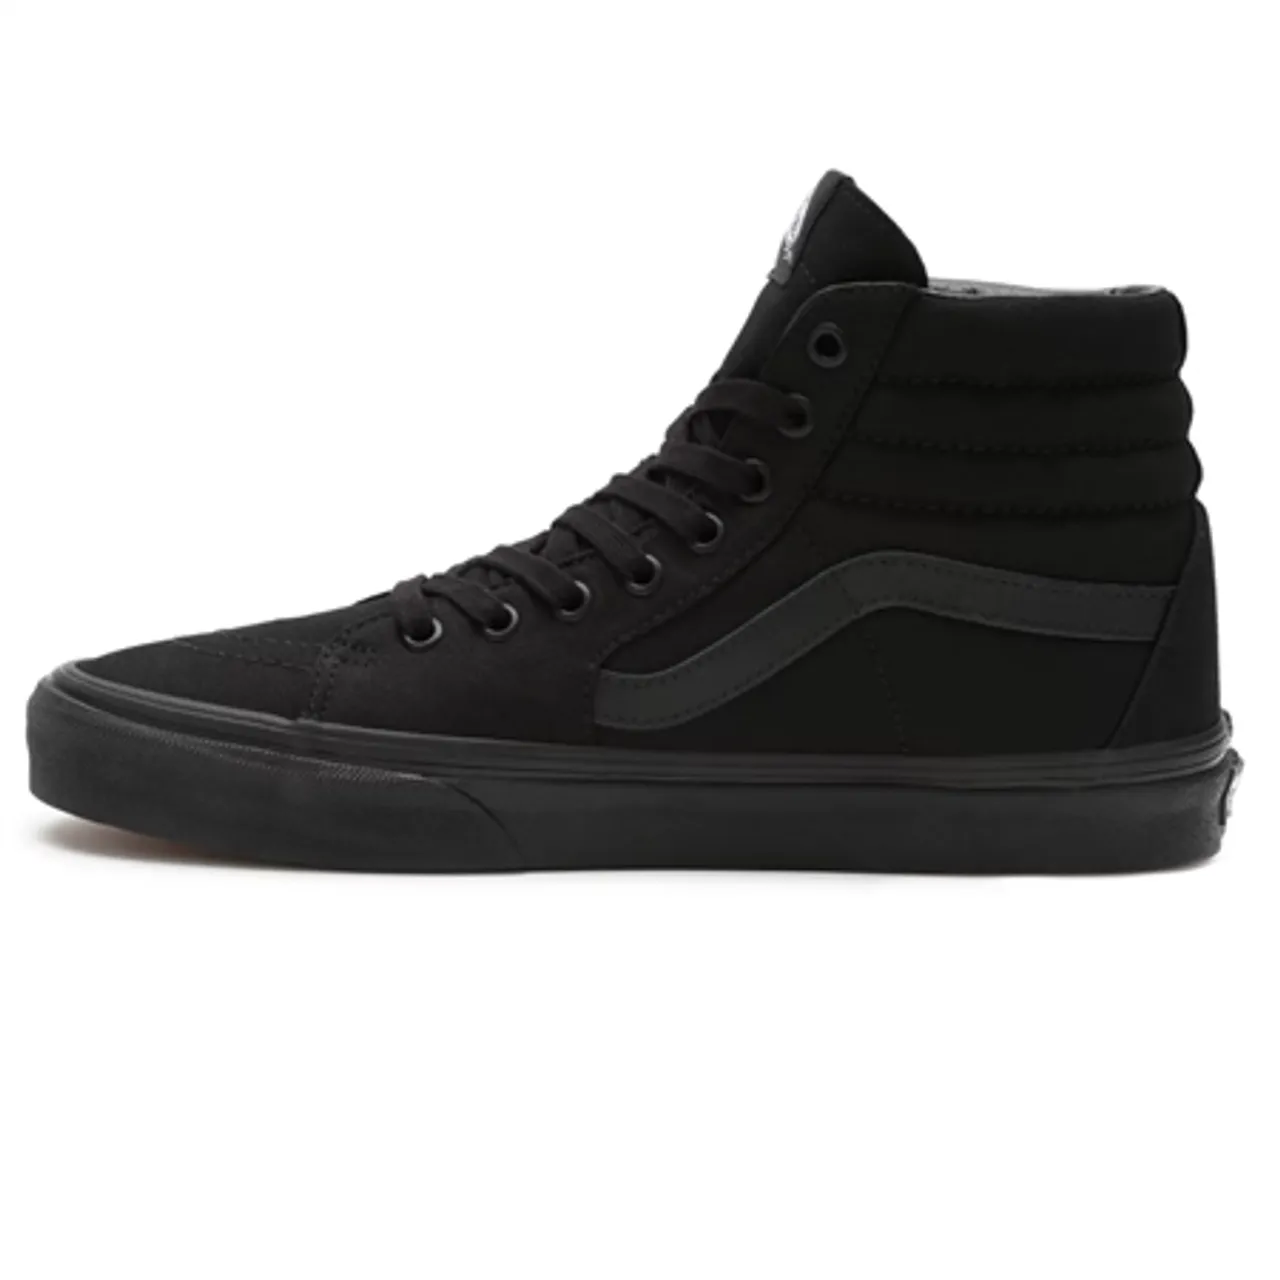 Vans SK8-Hi Shoes - Black - UK 8 (EU 42)